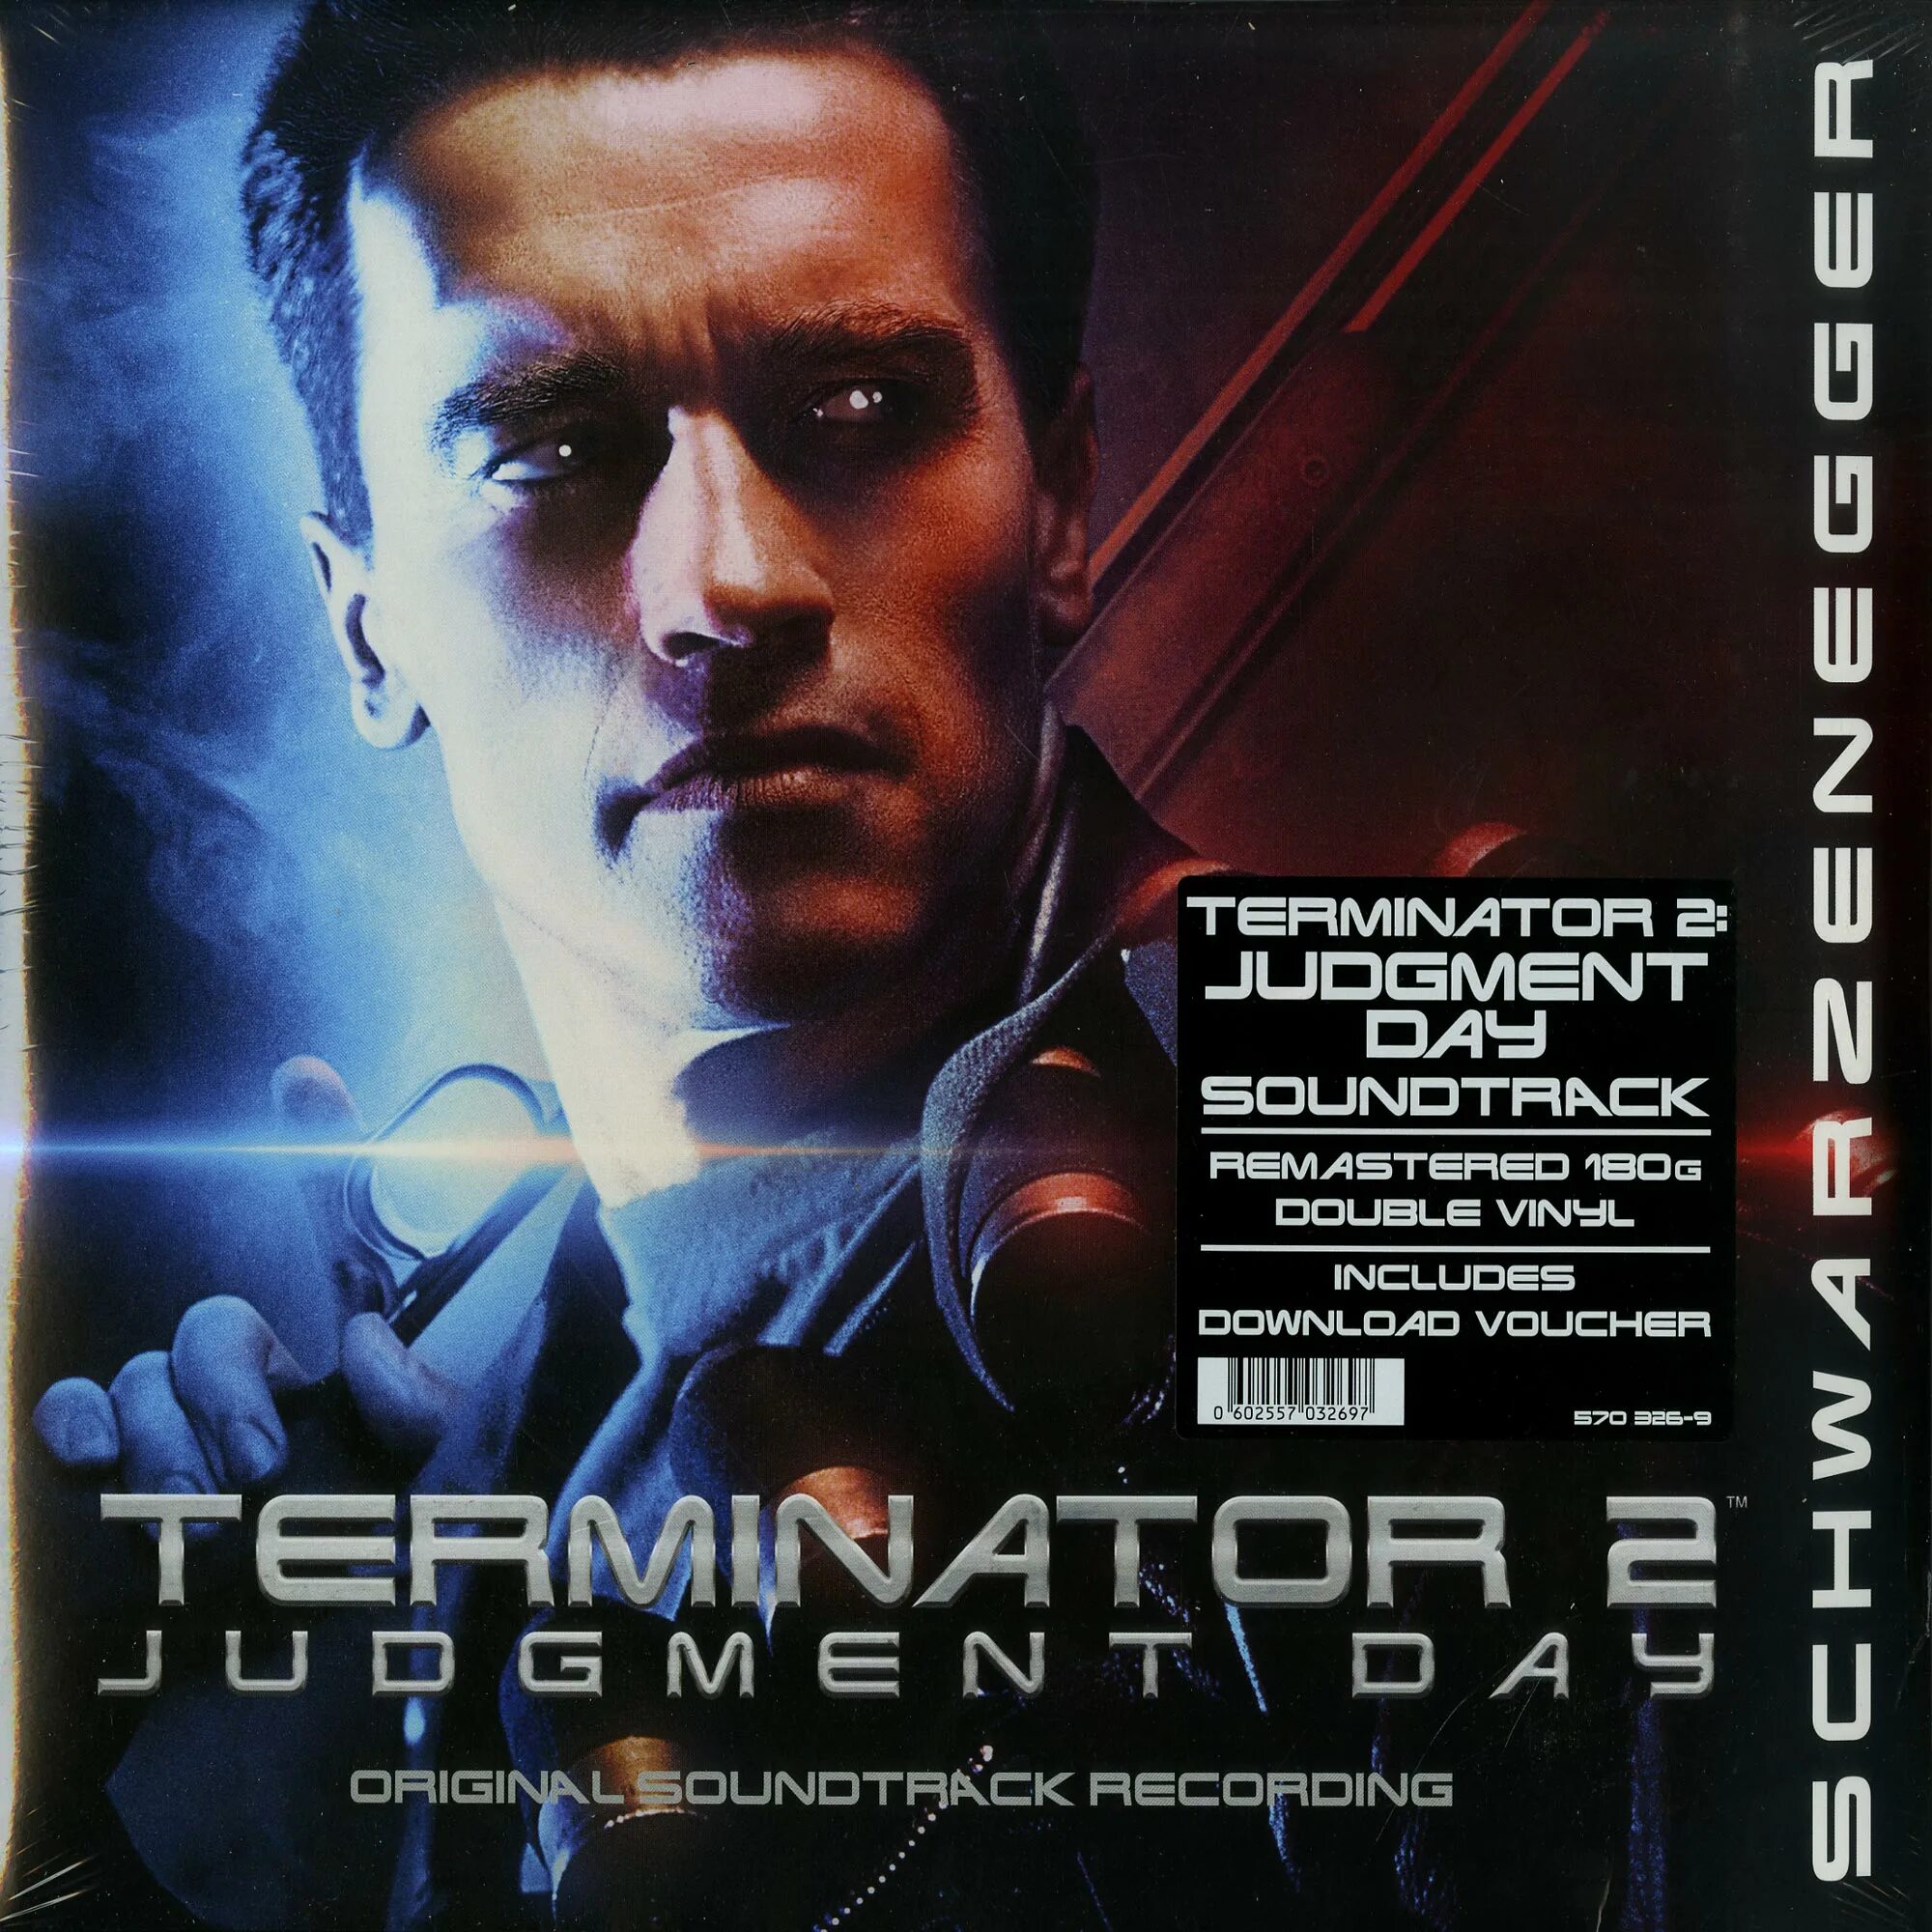 Brad Fiedel Terminator. Brad Fiedel Terminator 2: Judgment Day. OST Terminator (1991). Terminator 2 Judgment Day.